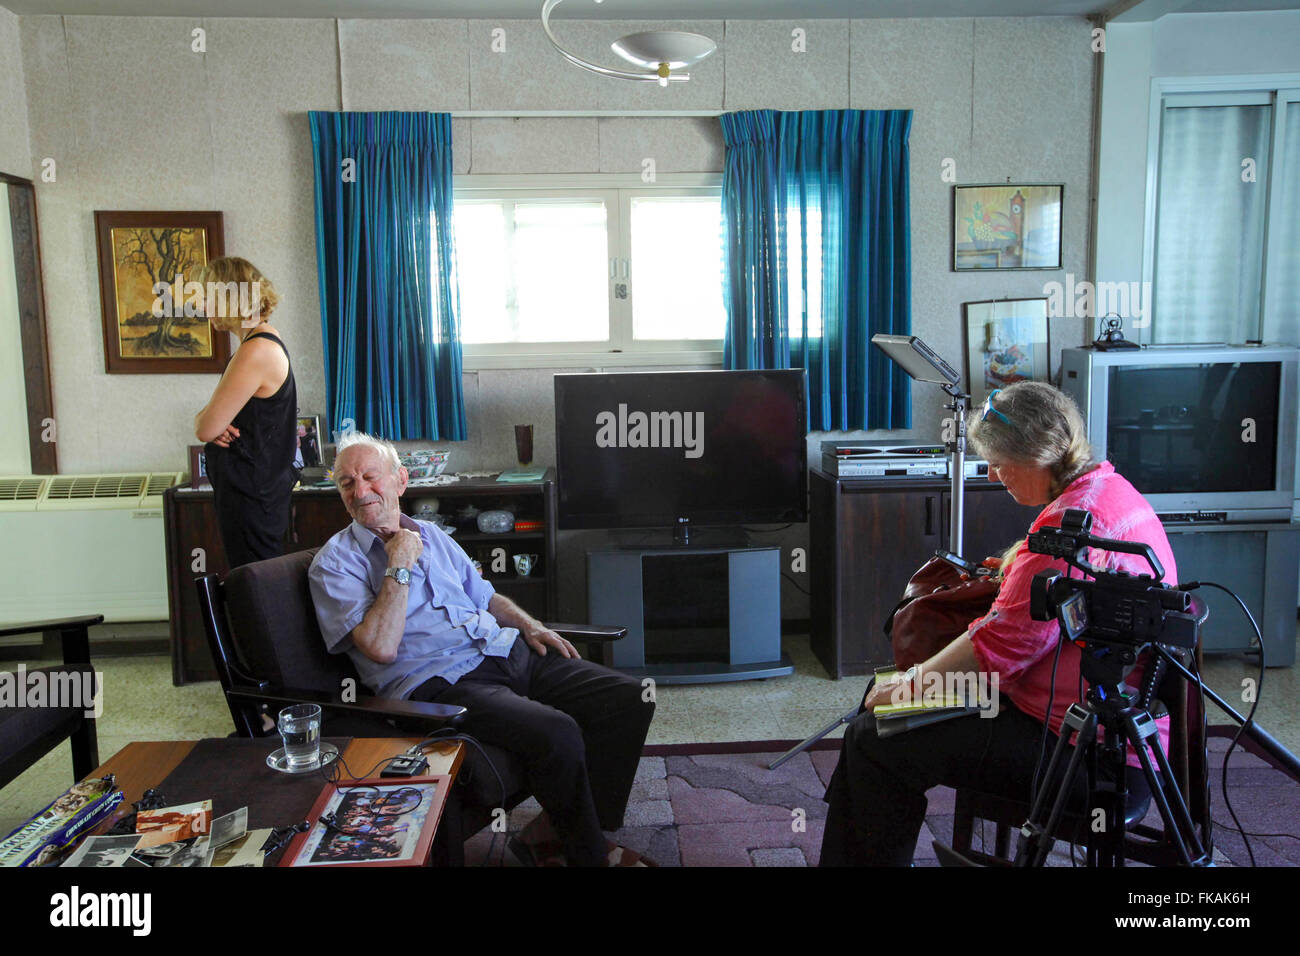 86 Jahre ist alte Avraham Avraham vor einer Videokamera von Yad Vashem Archiv Organisation, interviewt geben testi Stockfoto